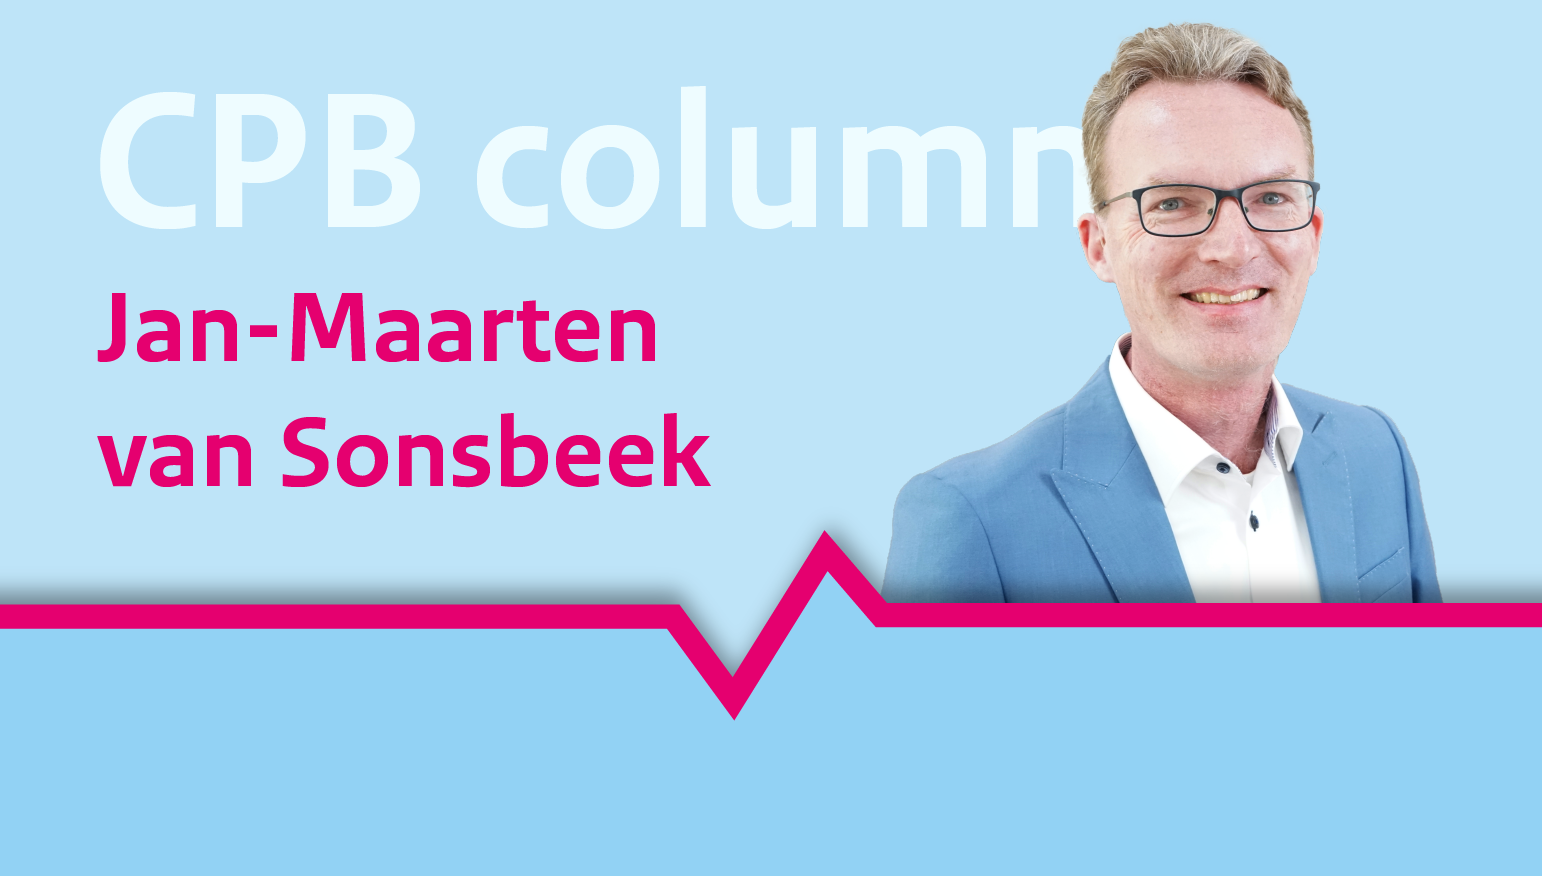 Jan-Maarten van Sonsbeek